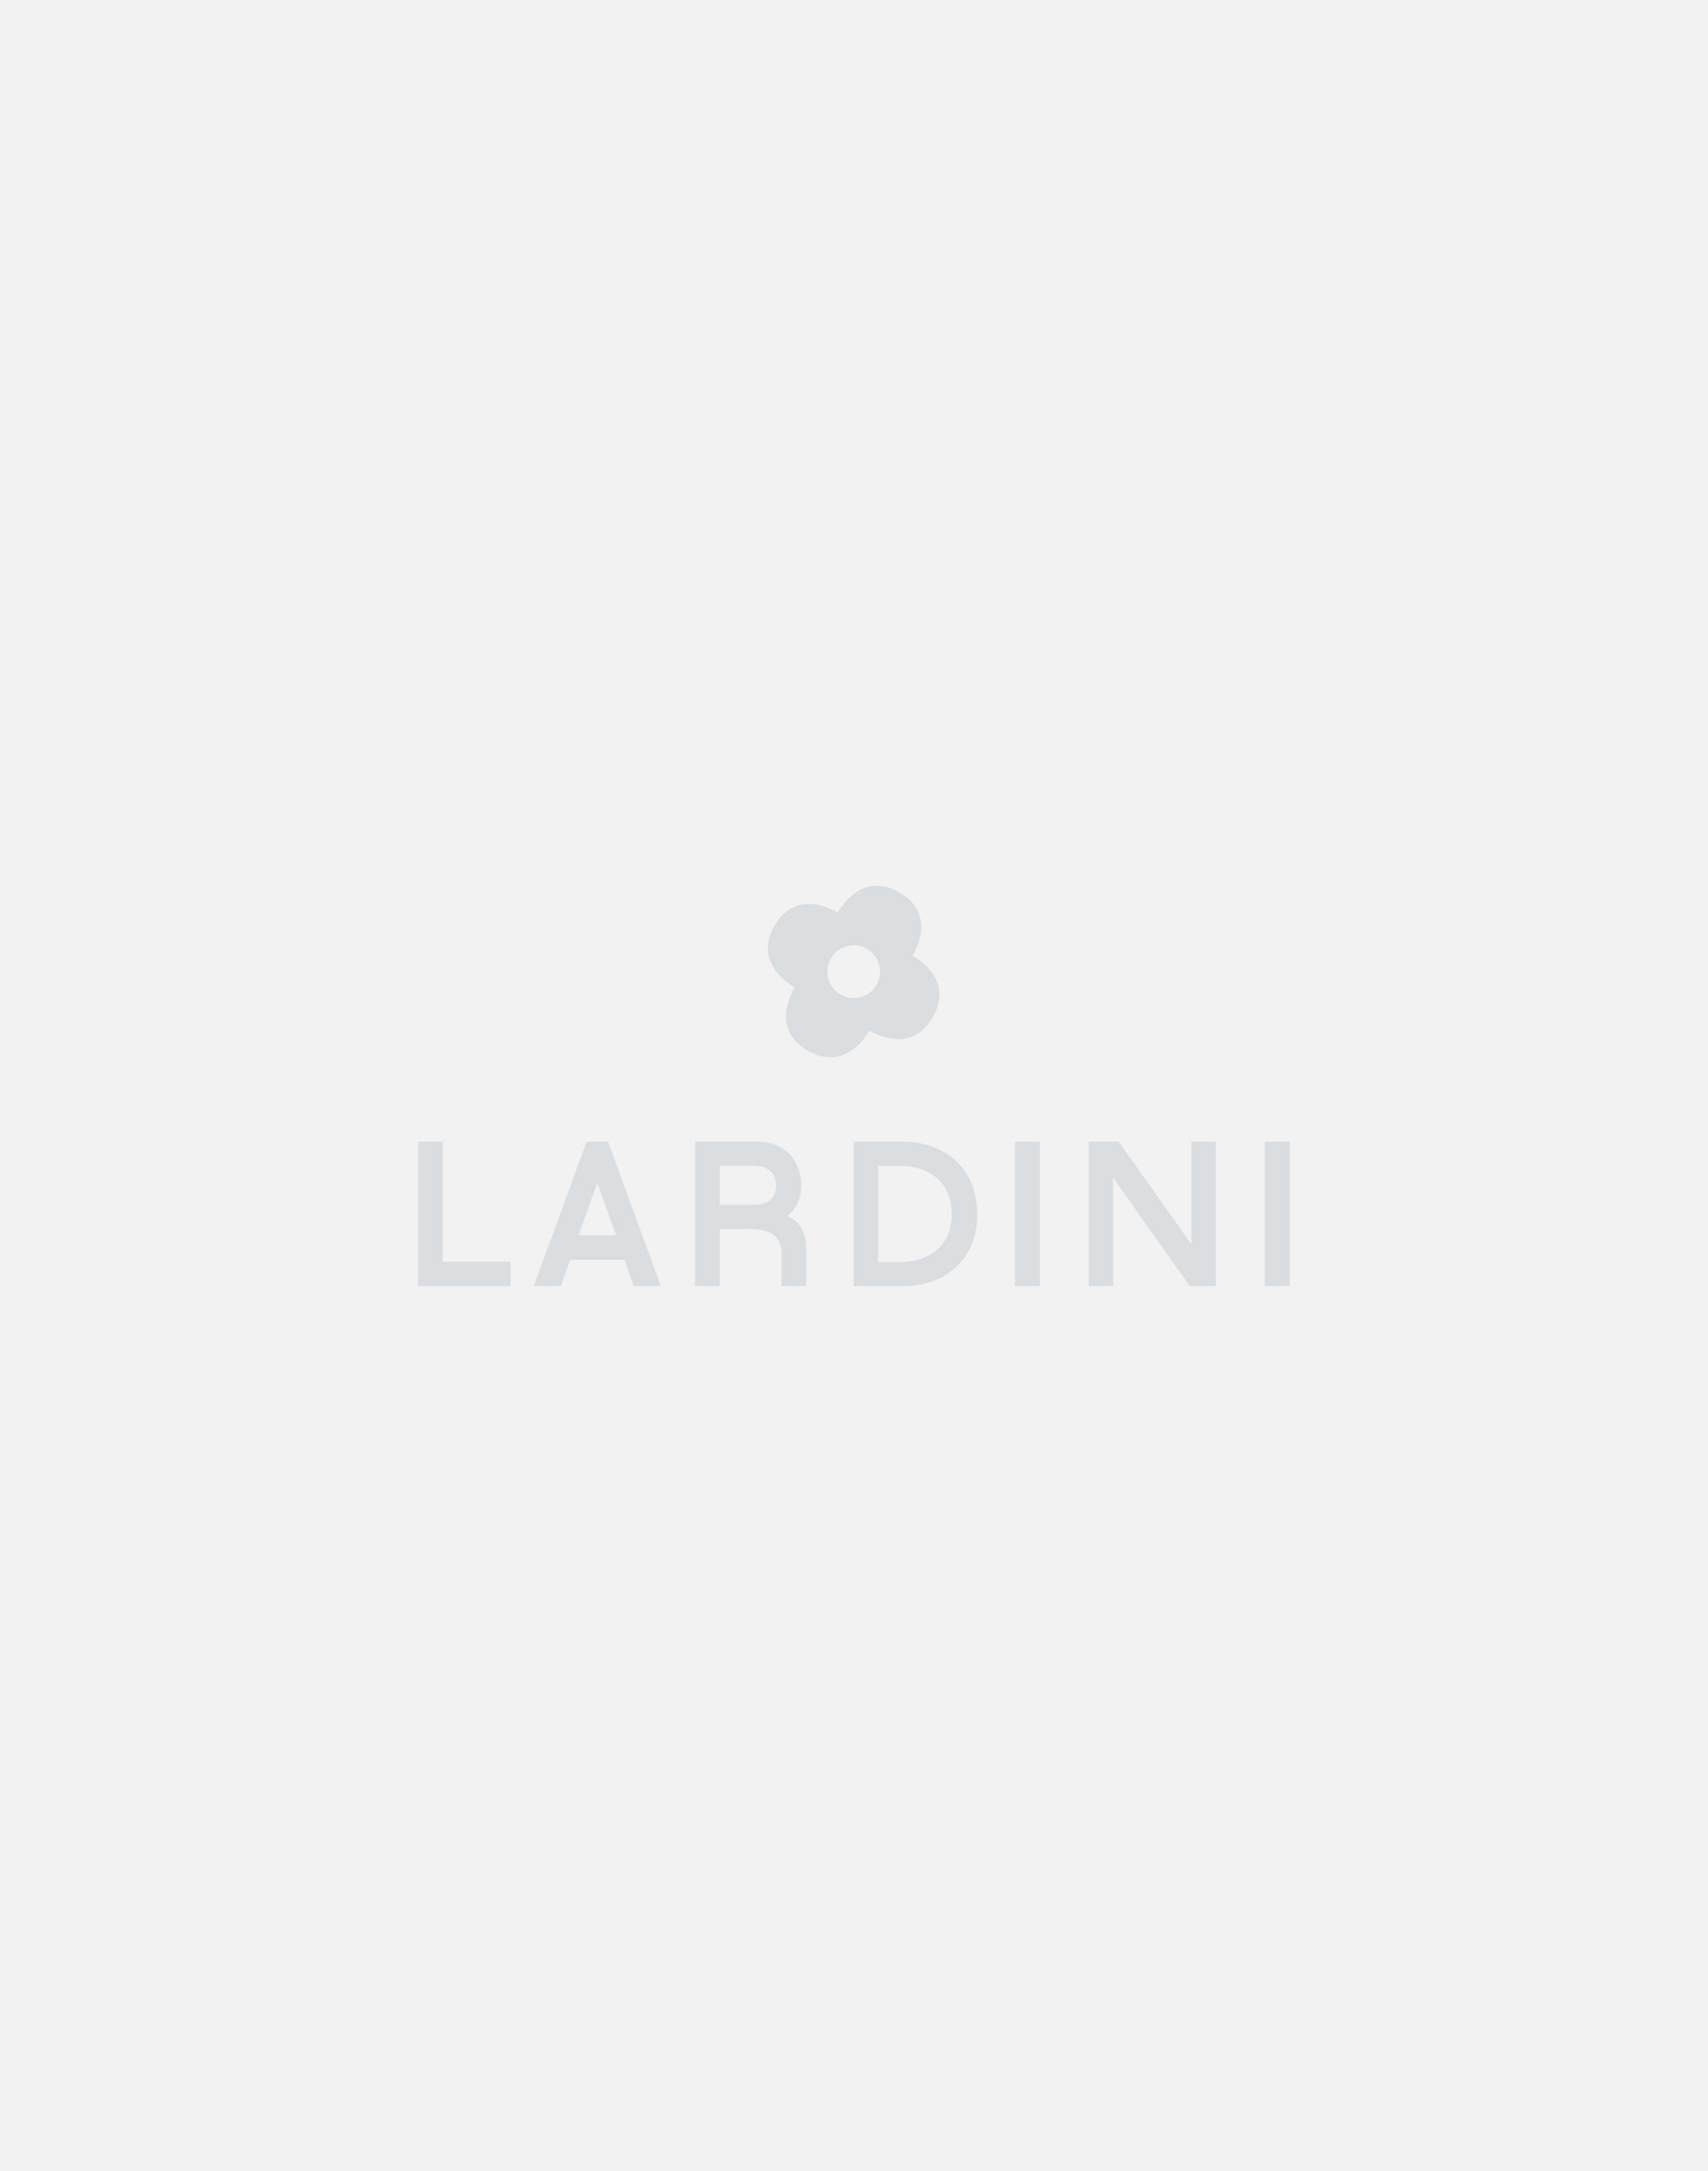 White trousers - Luigi Lardini capsule 3